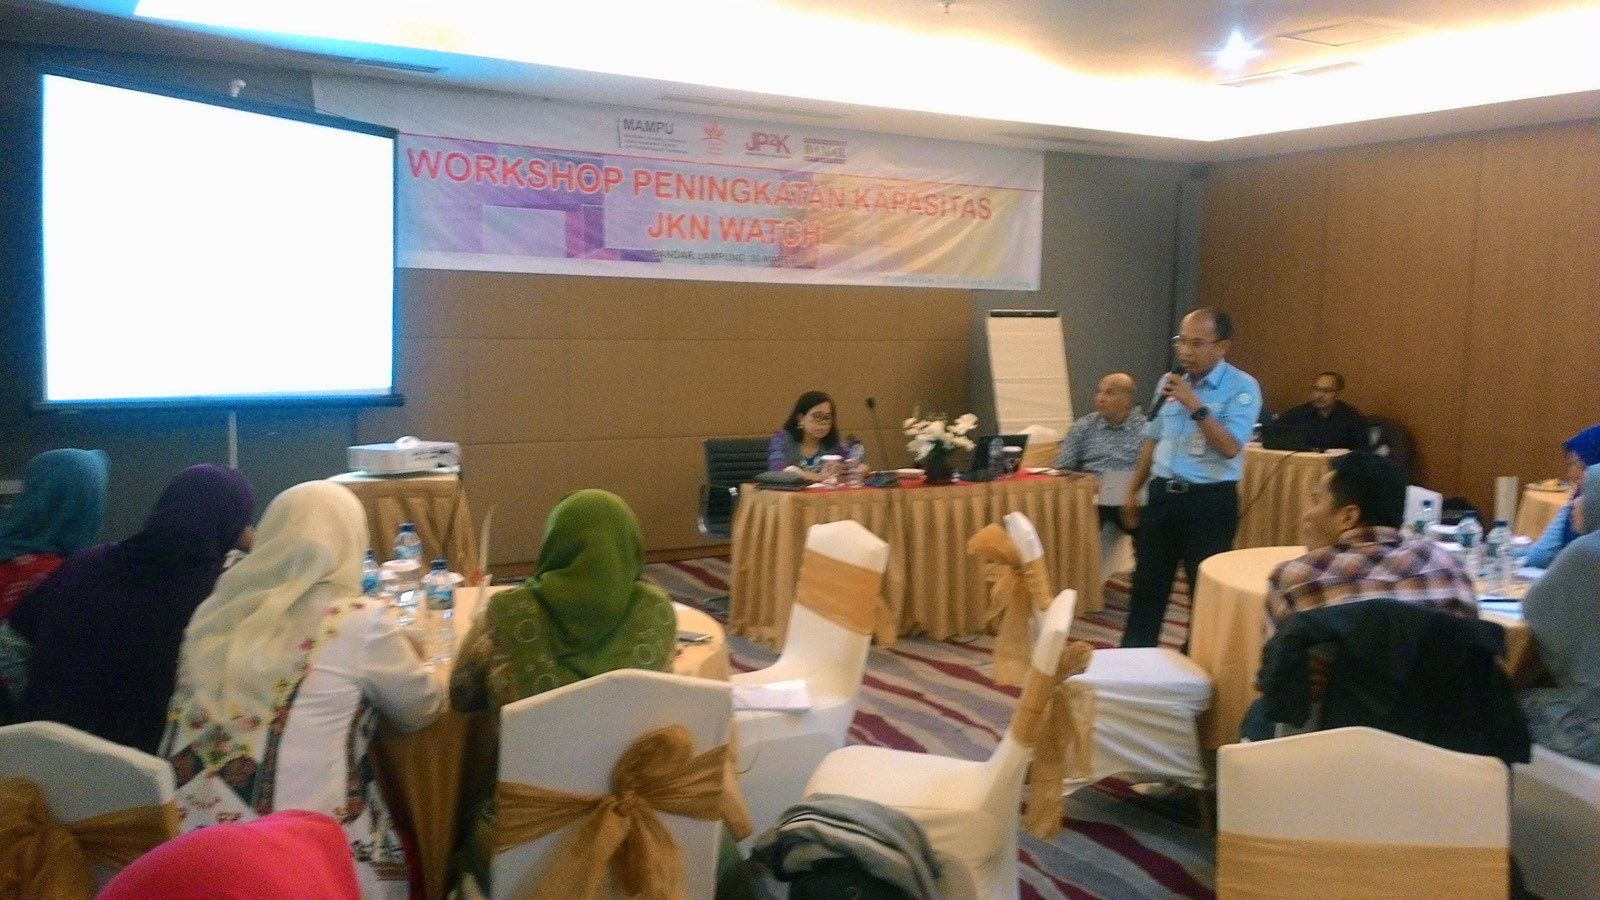 Workshop Peningkatan Kapasitas Jaminan Kesehatan (JKN) Watch yang ditaja Lembaga Advokasi Perempuan Damar, Kamis (30/3) di Hotel Emersia. (Lampungnews/Davit)